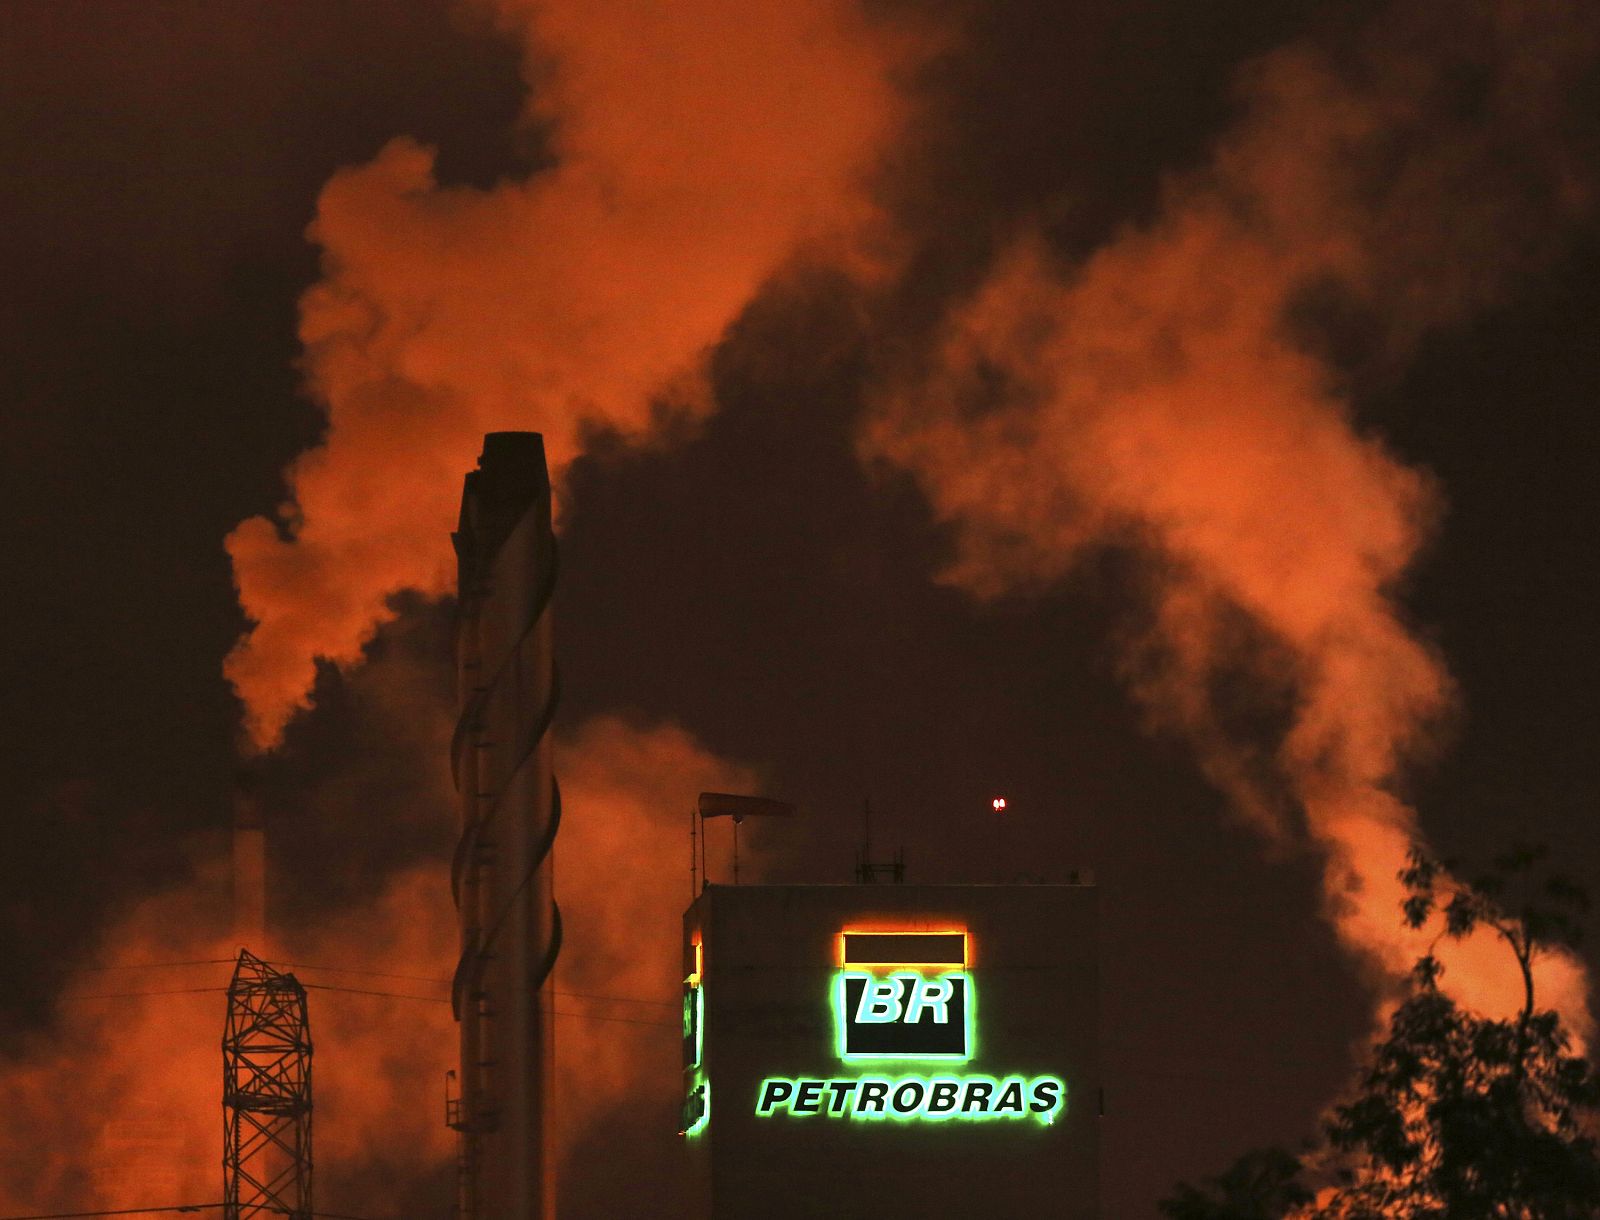 El logo de la empresa estatal brasileña Petrobras